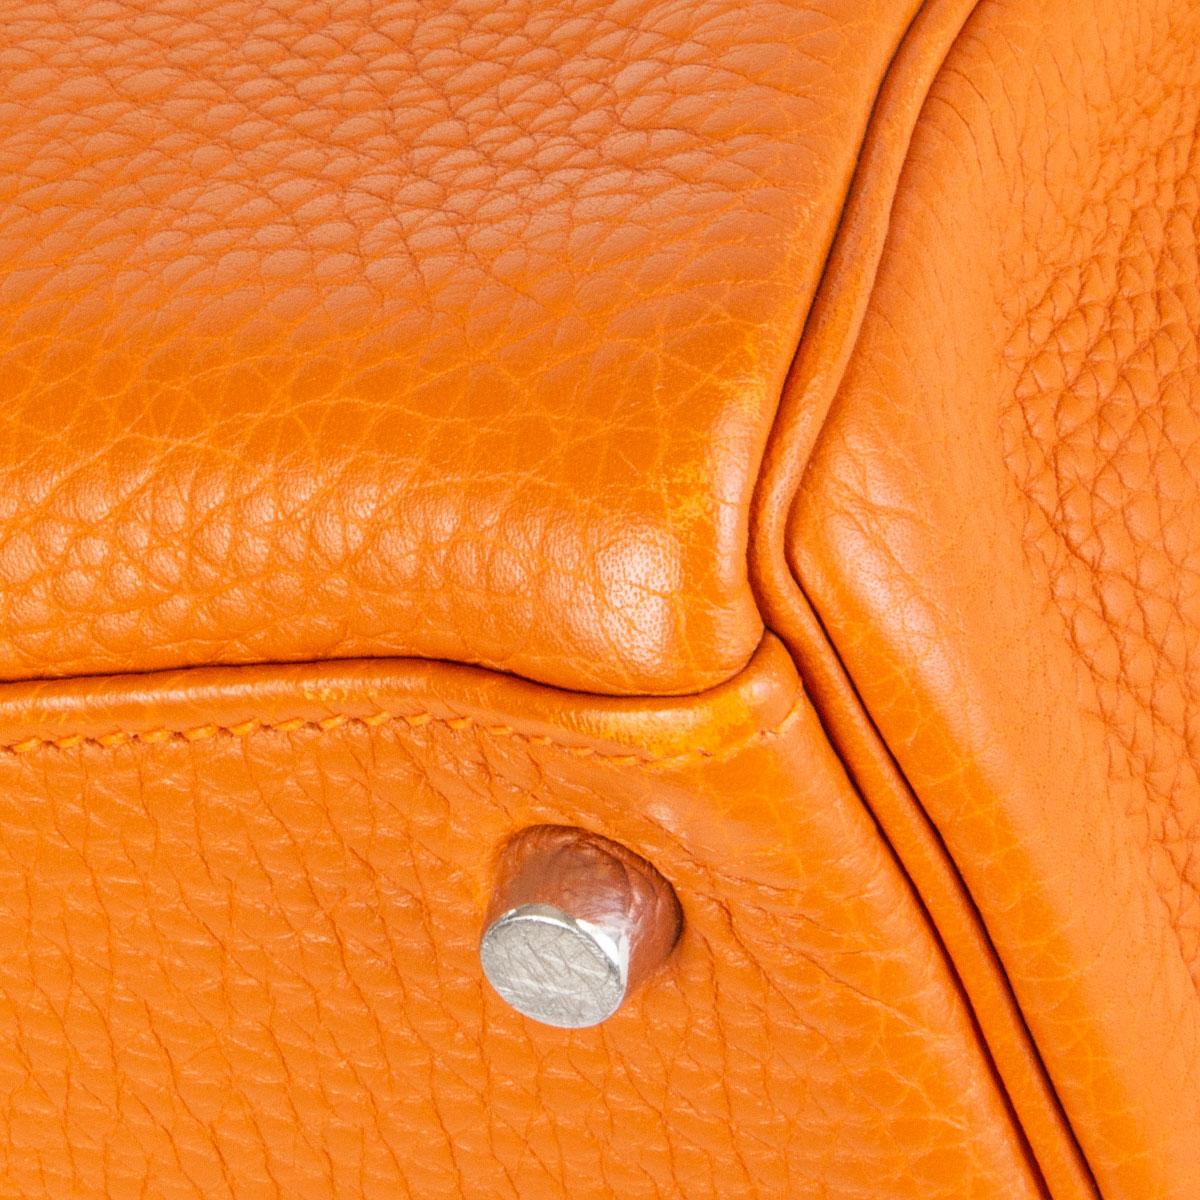 HERMES Potiron orange Clemence leather KELLY 35 RETOURNE Bag 2